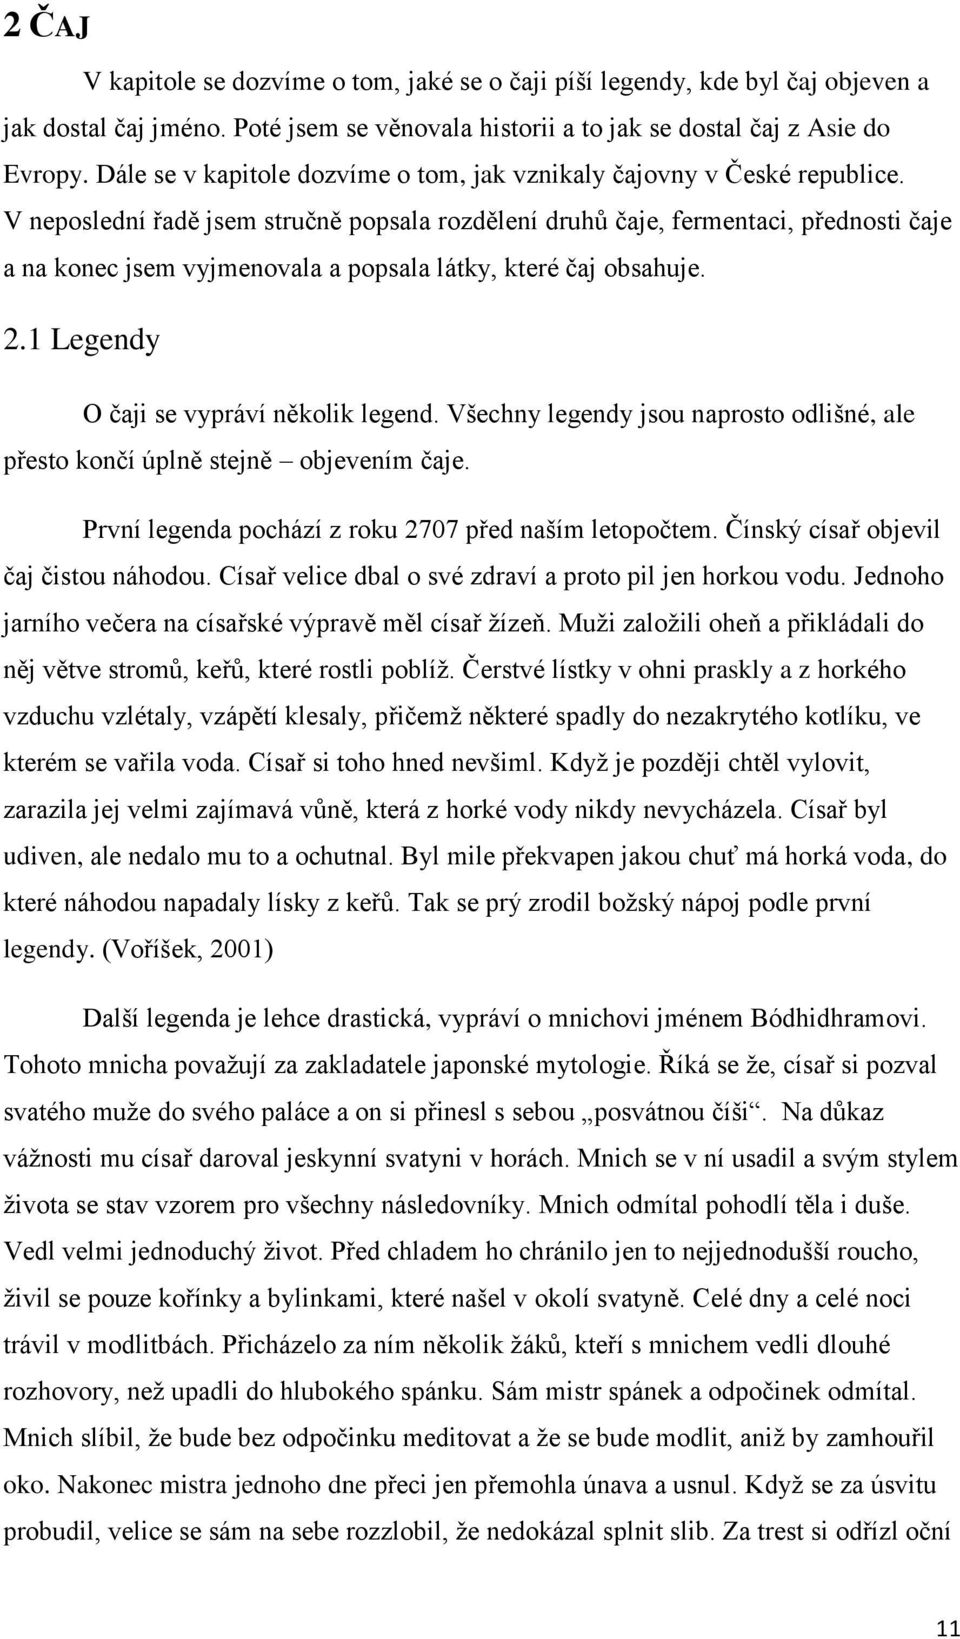 VYSOKÁ ŠKOLA HOTELOVÁ V PRAZE 8, SPOL. S.R.O. - PDF Free Download